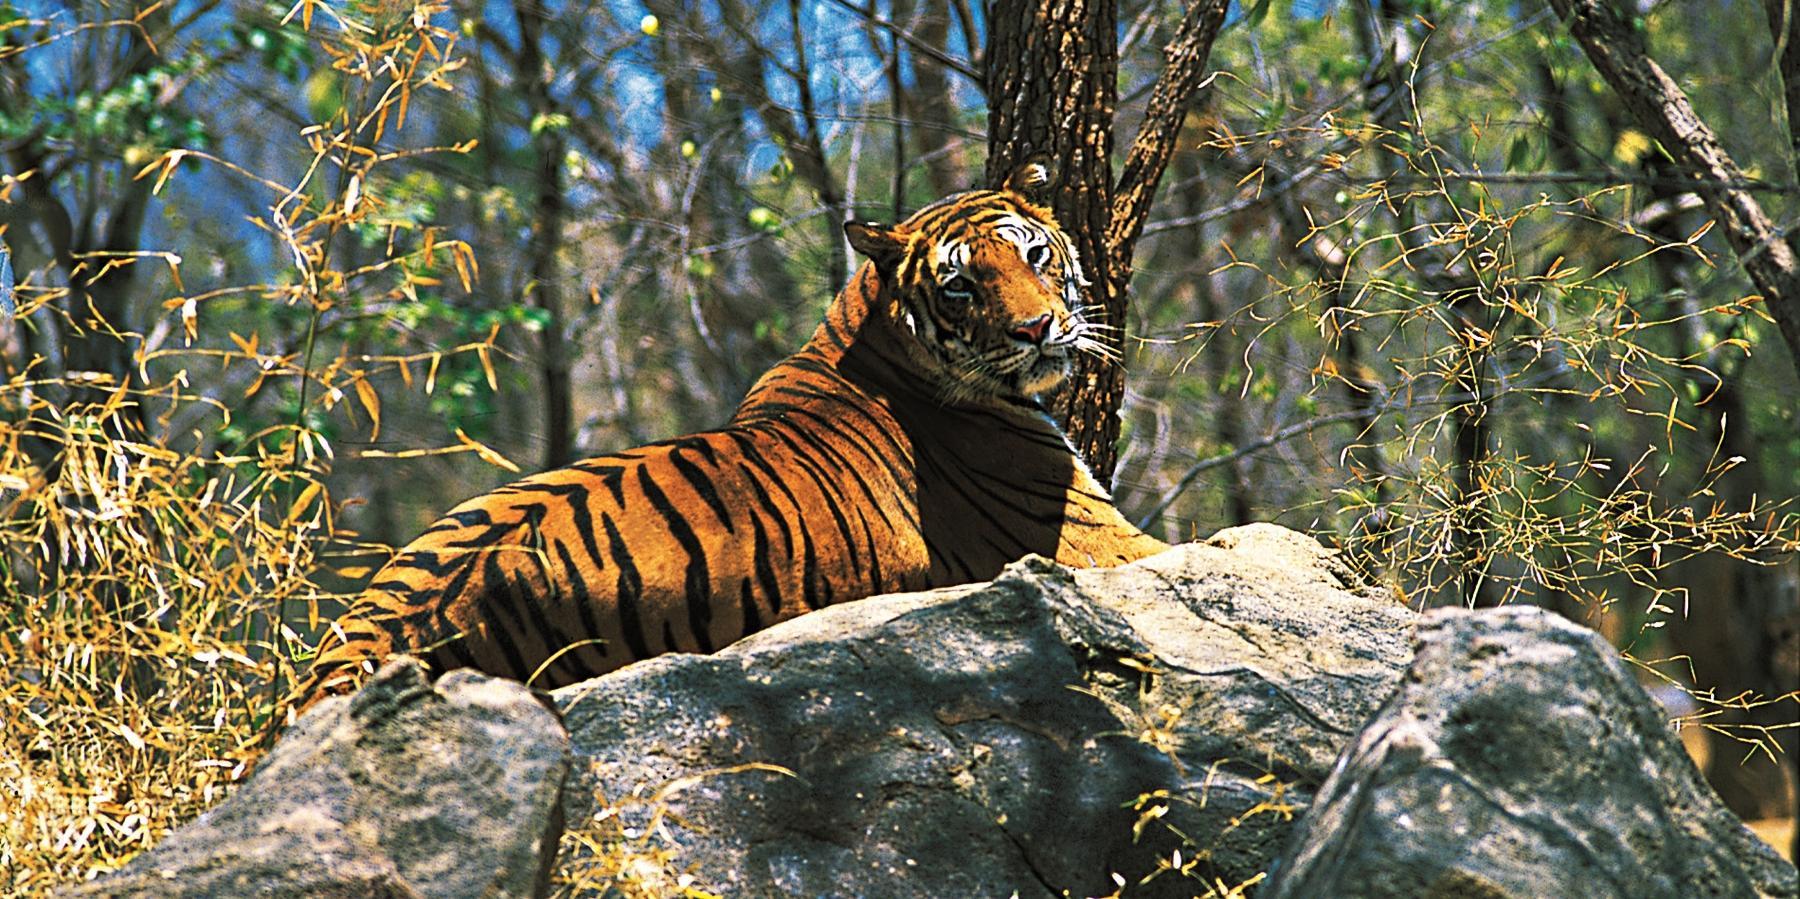 Trekking at Periyar Tiger Reserve